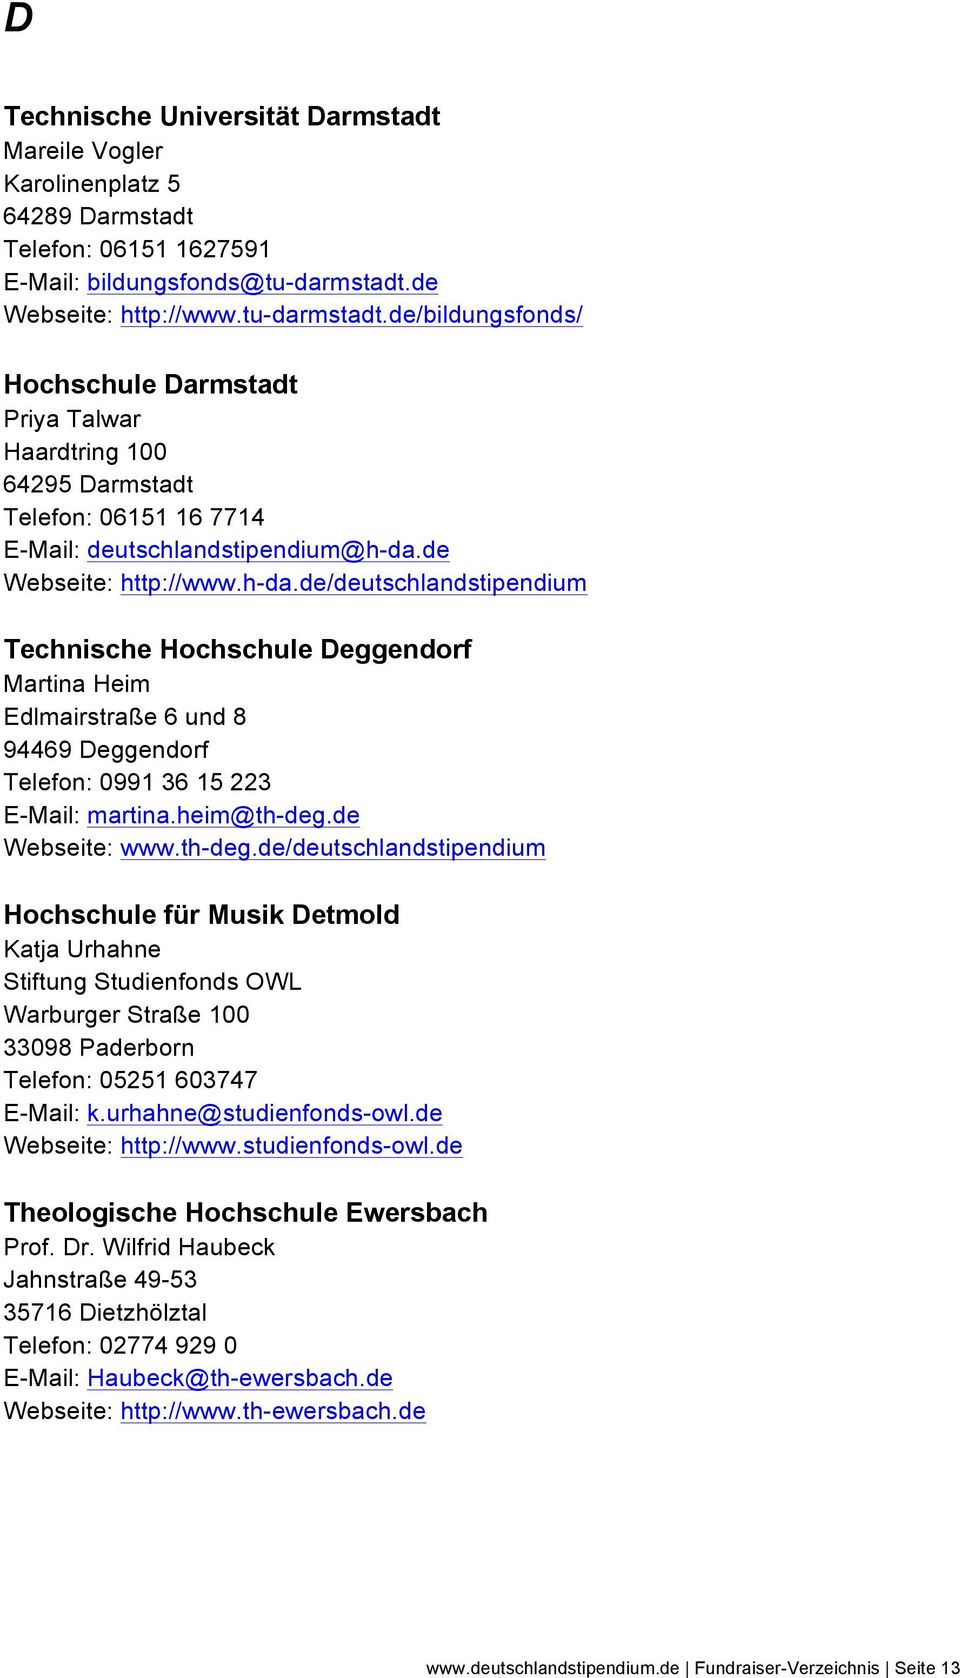 de Webseite: http://www.h-da.de/deutschlandstipendium Technische Hochschule Deggendorf Martina Heim Edlmairstraße 6 und 8 94469 Deggendorf Telefon: 0991 36 15 223 E-Mail: martina.heim@th-deg.